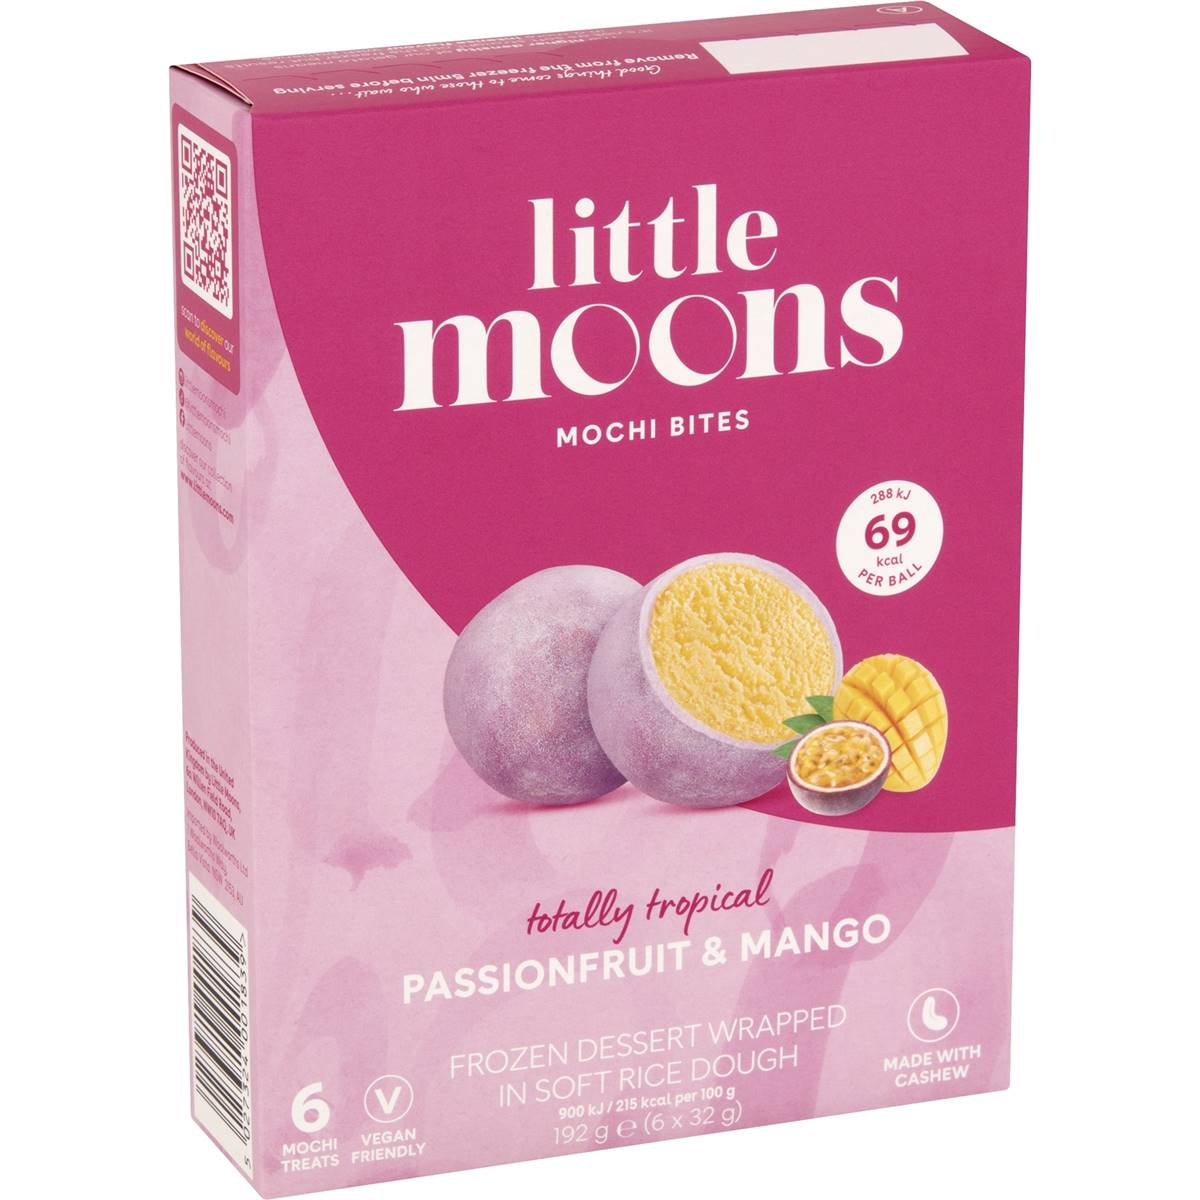 Calories in Little Moons Passionfruit & Mango Mochi Bites